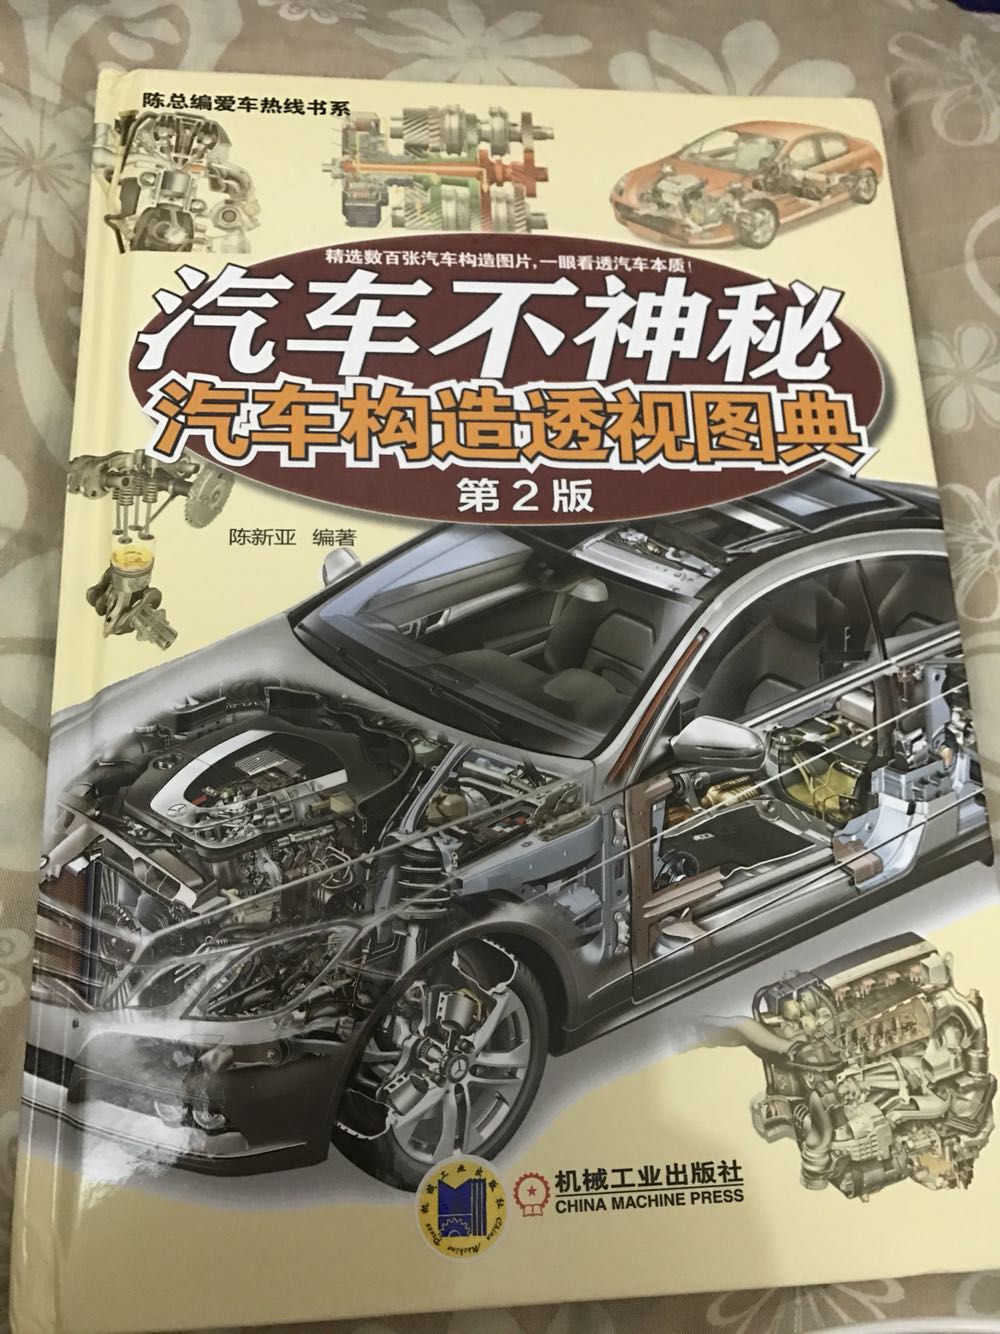 包装完好无损。这本书可以更好的帮助理解汽车结构，还有各种汽车件的名称，和各种机构的原理。还不错